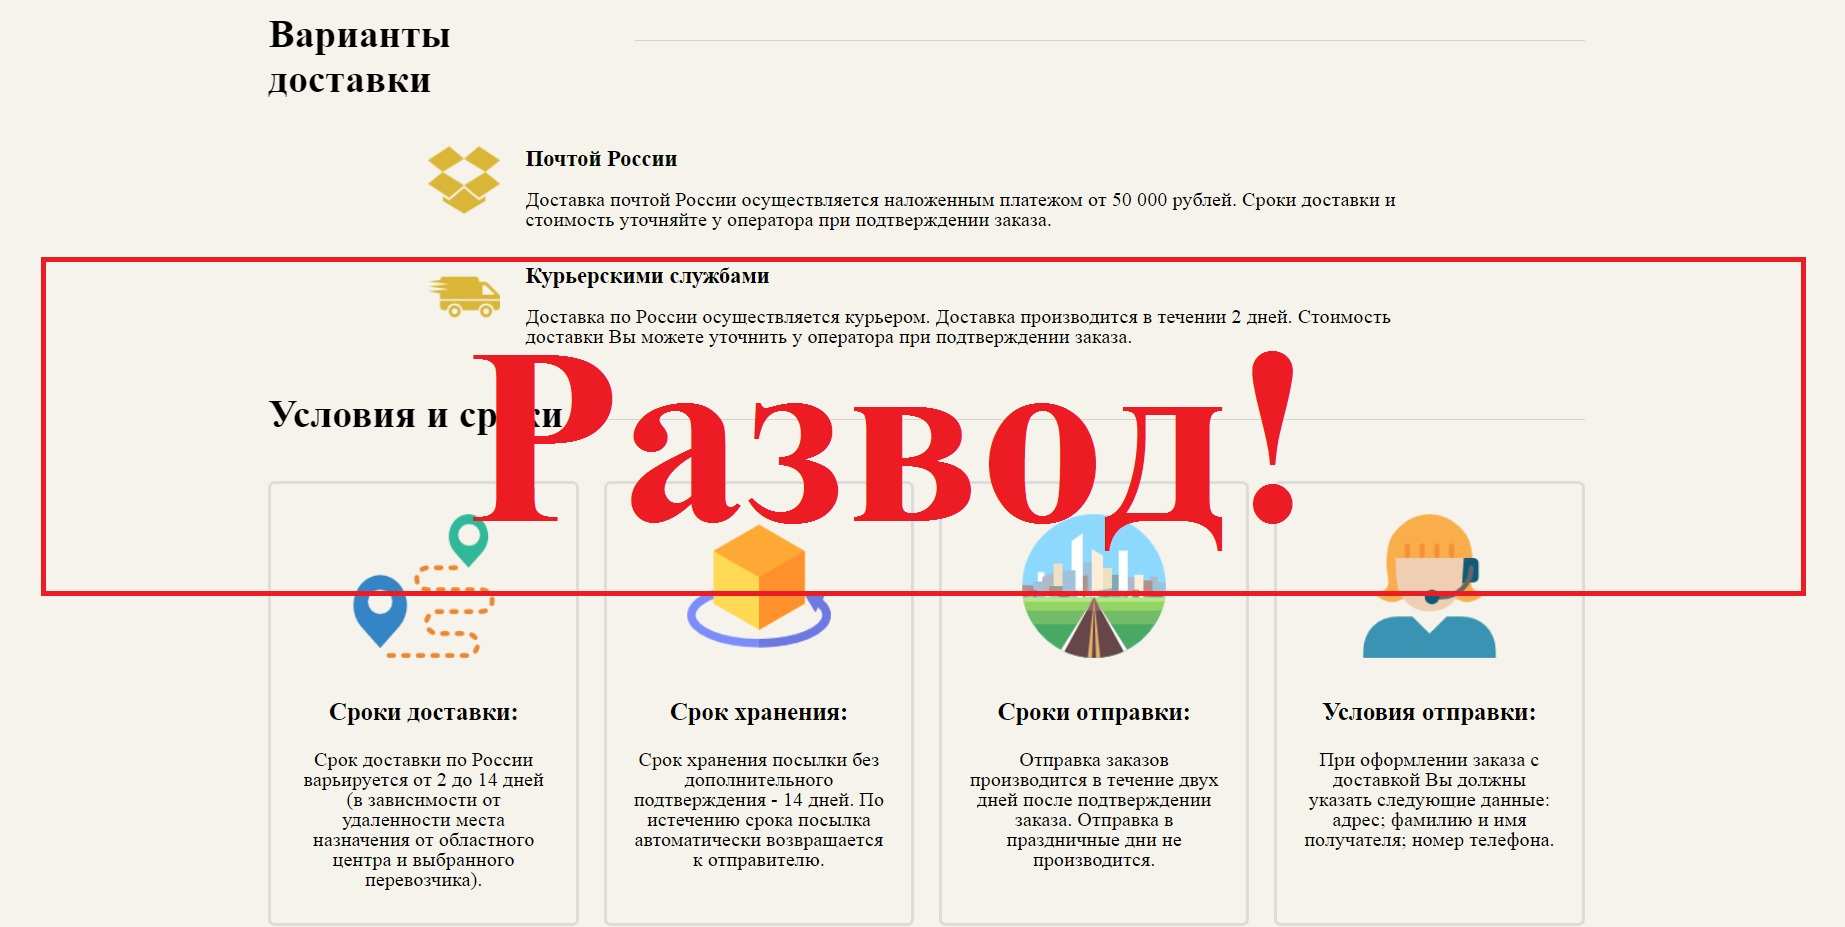 Vaiko.ru – отзывы о магазине роботов